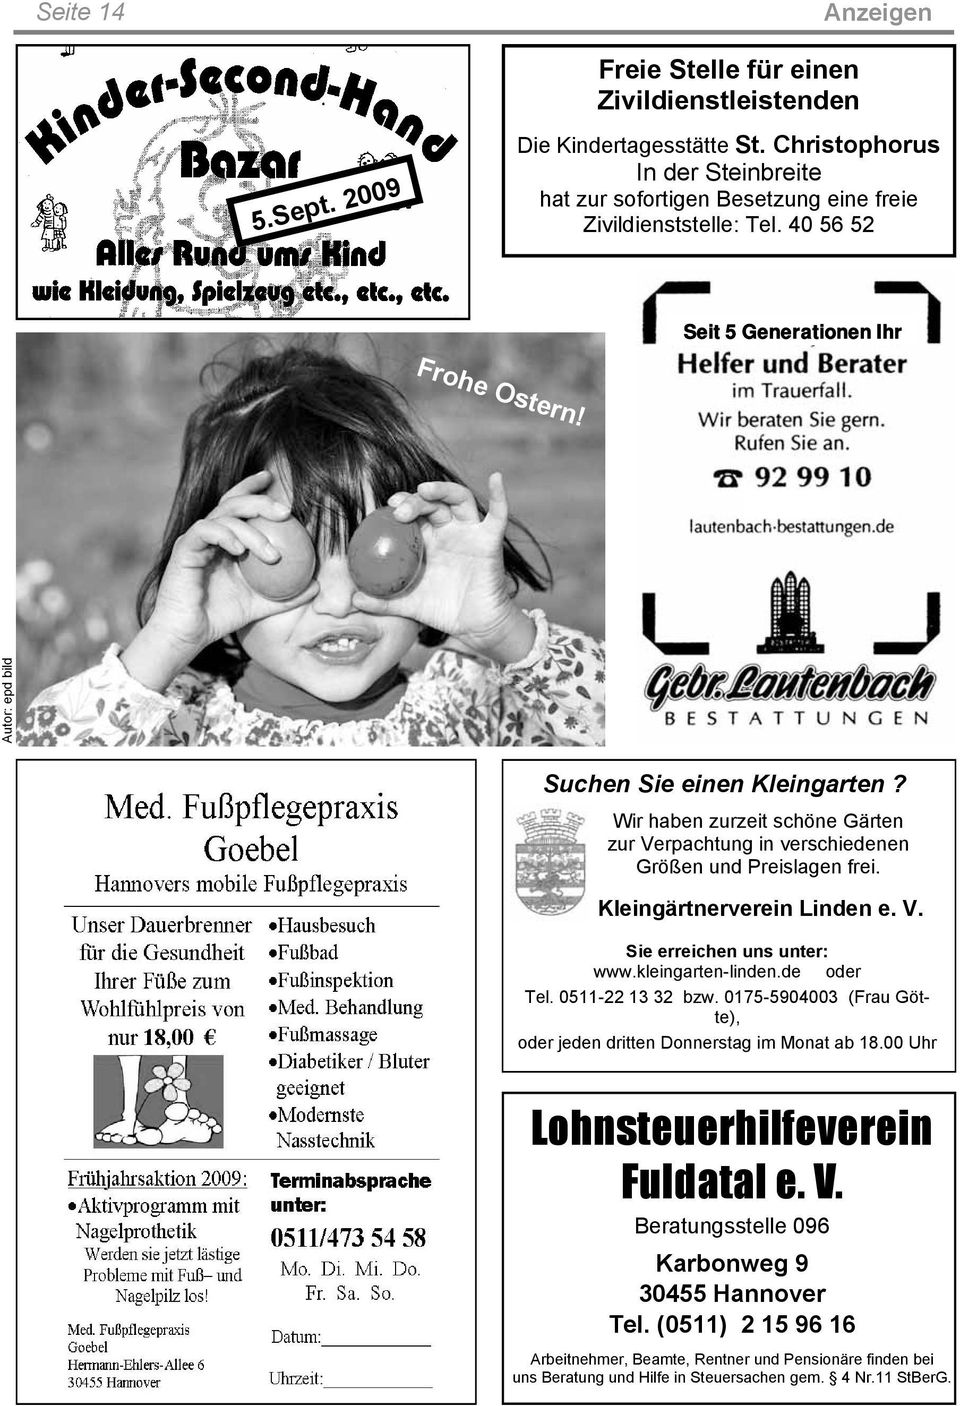 Kleingärtnerverein Linden e. V. Sie erreichen uns unter: www.kleingarten-linden.de oder Tel. 0511-22 13 32 bzw. 0175-5904003 (Frau Götte), oder jeden dritten Donnerstag im Monat ab 18.